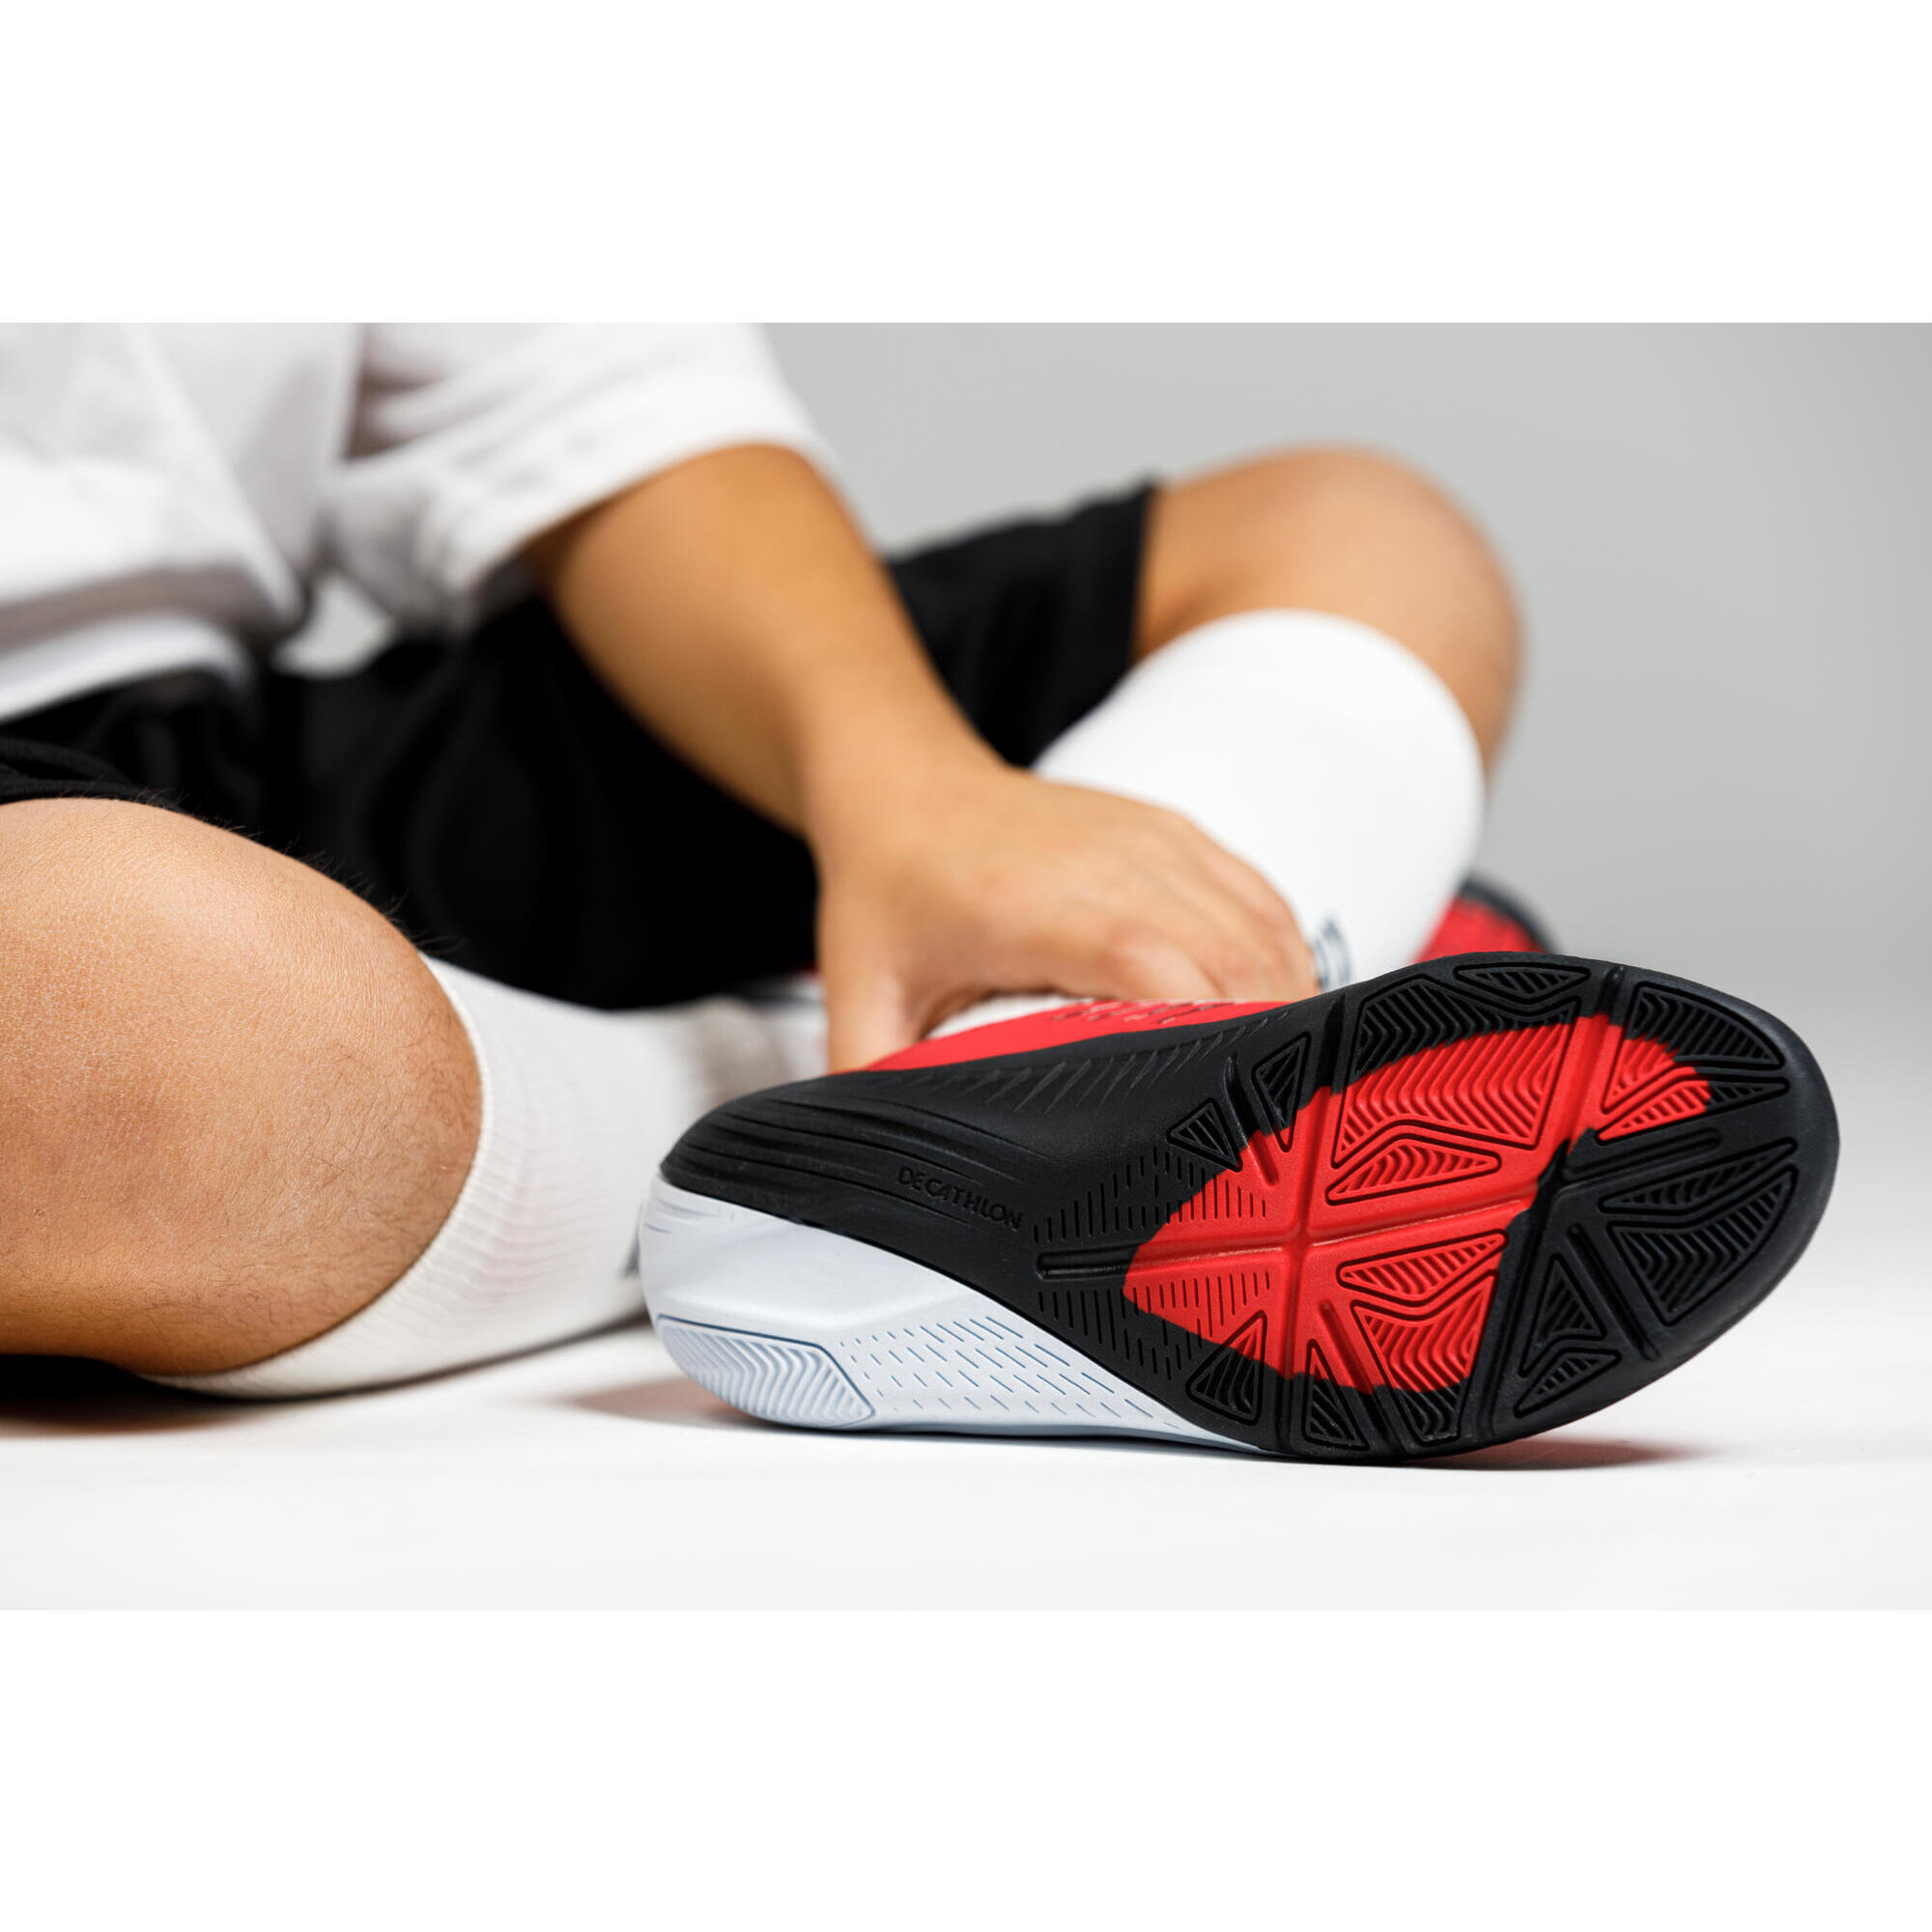 Kids'  Indoor Soccer Shoes - Ginka 500 Red/Black - KIPSTA